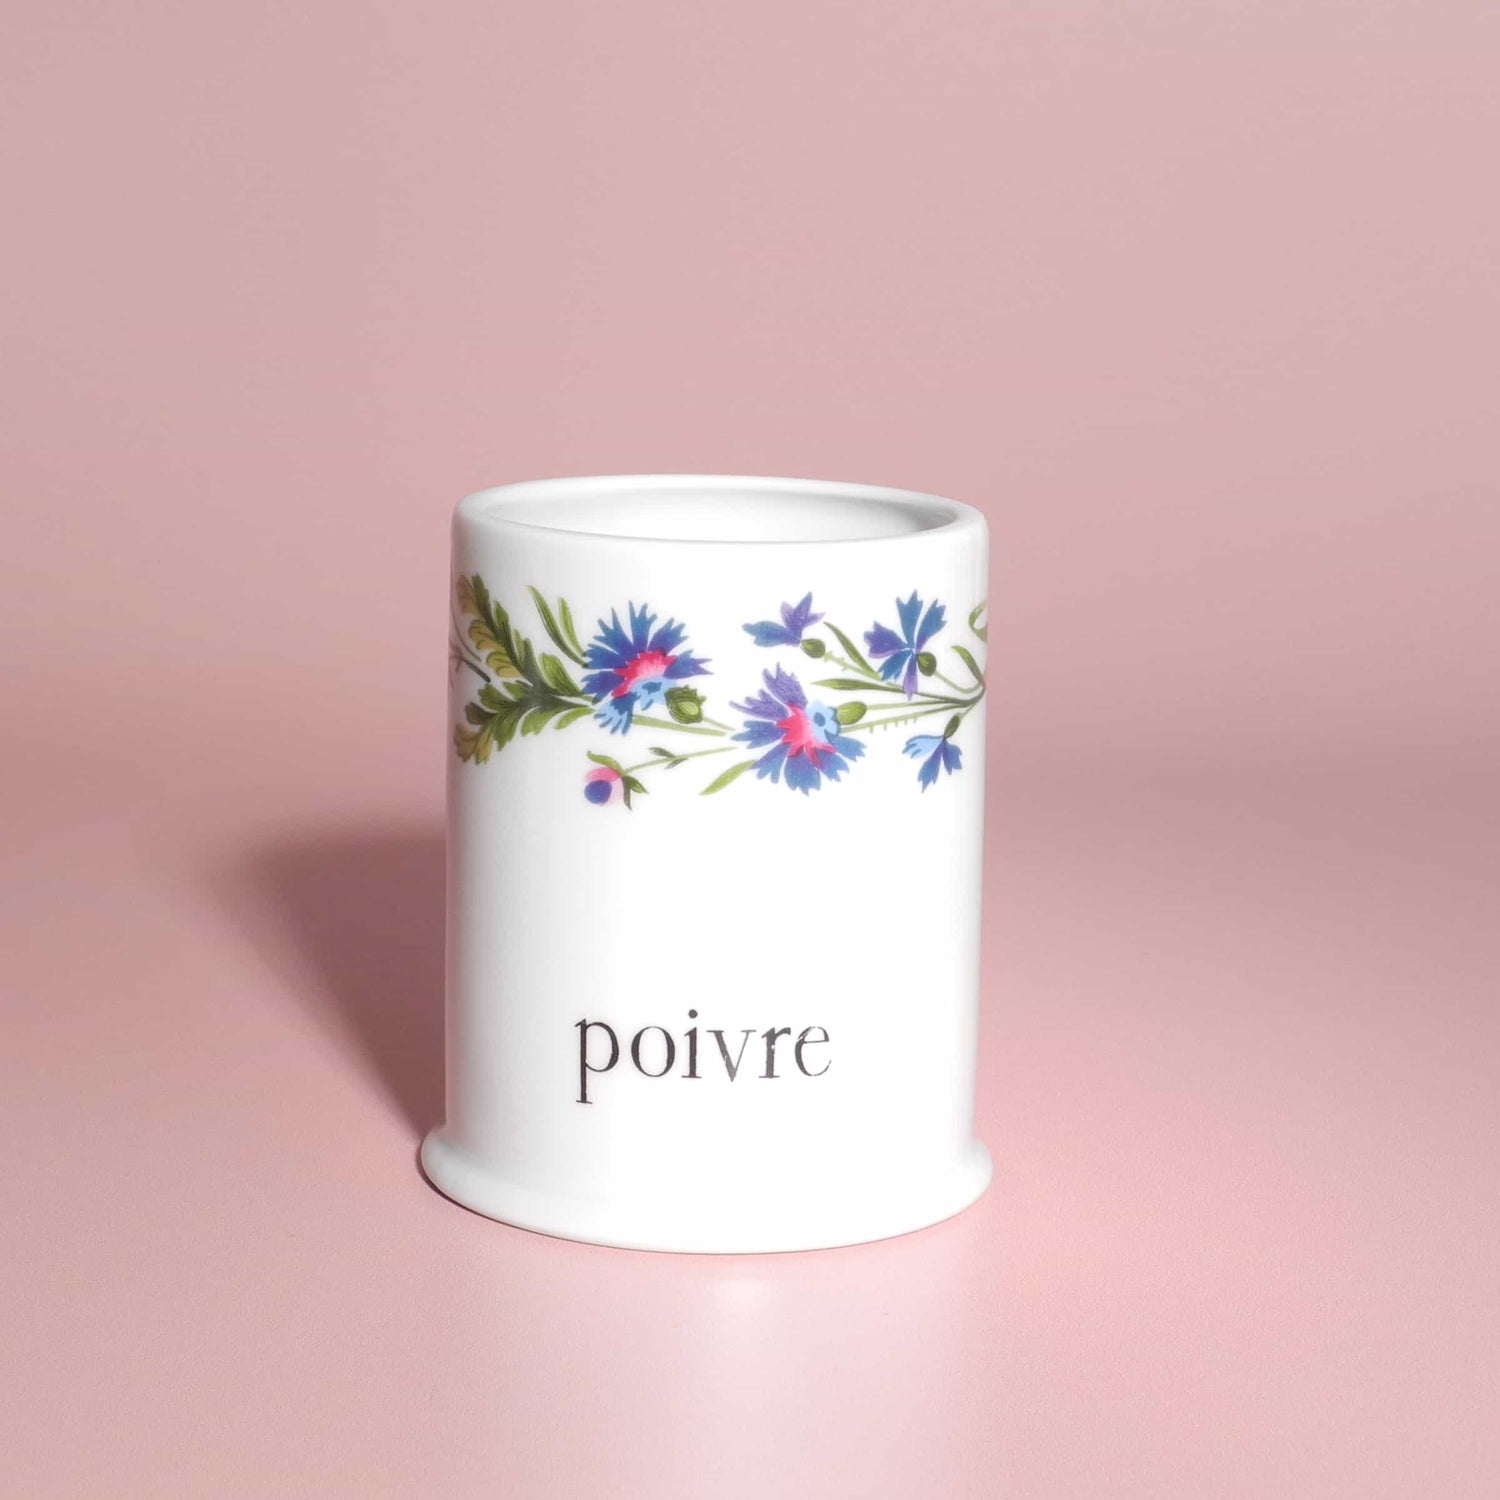 Vintage set of porcelain pots with floral design - French Address